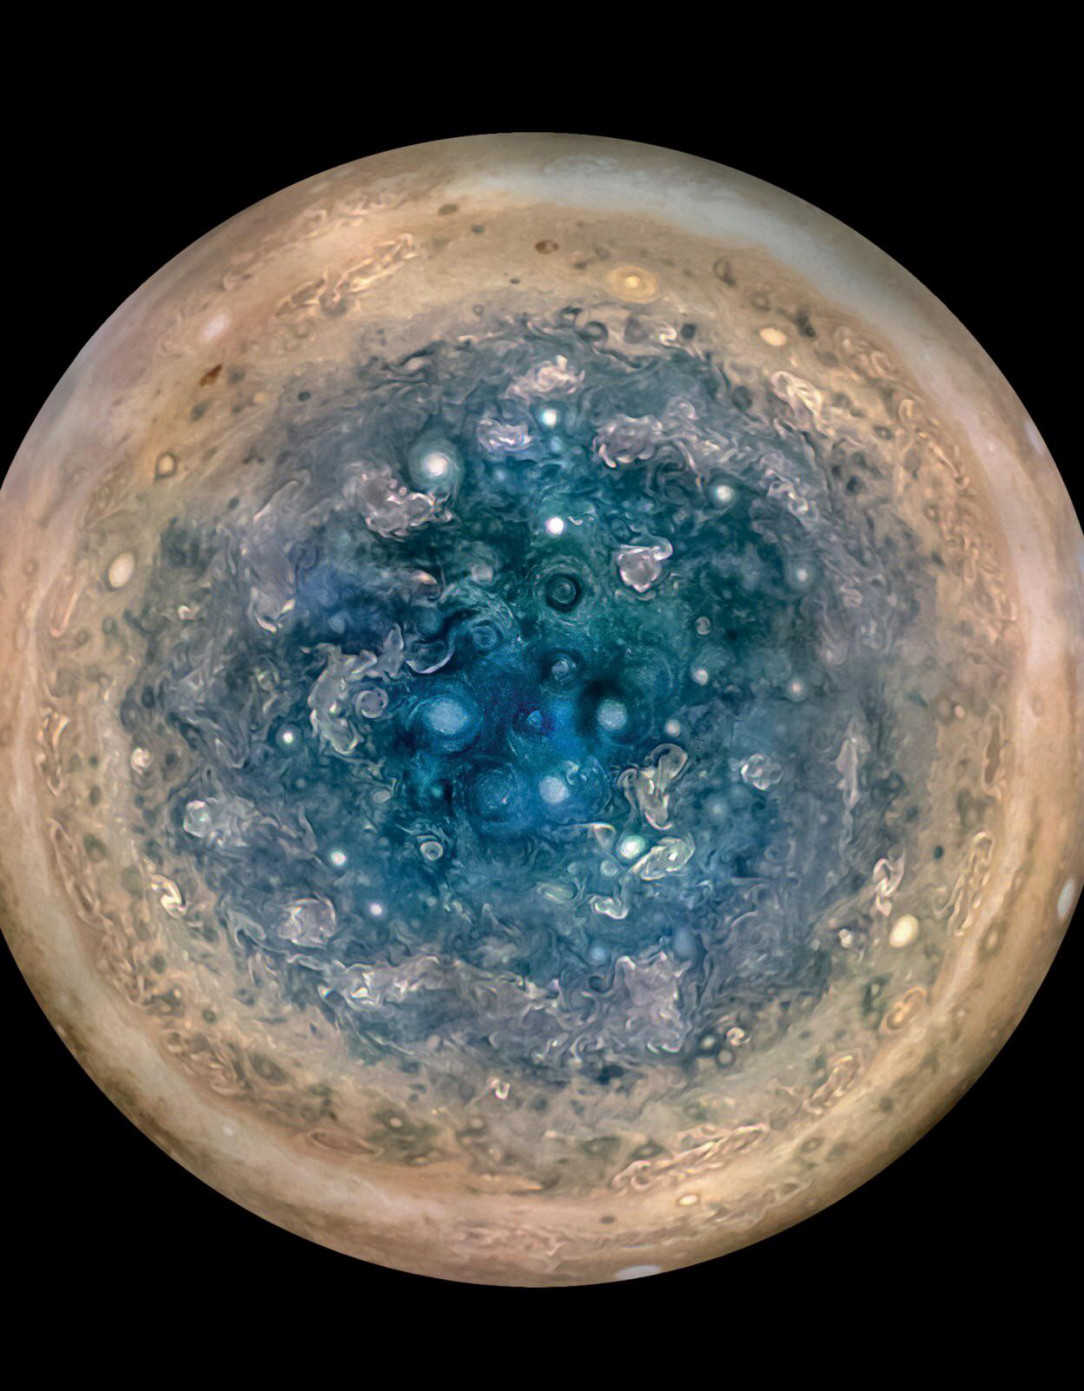 Up-close images of Jupiter